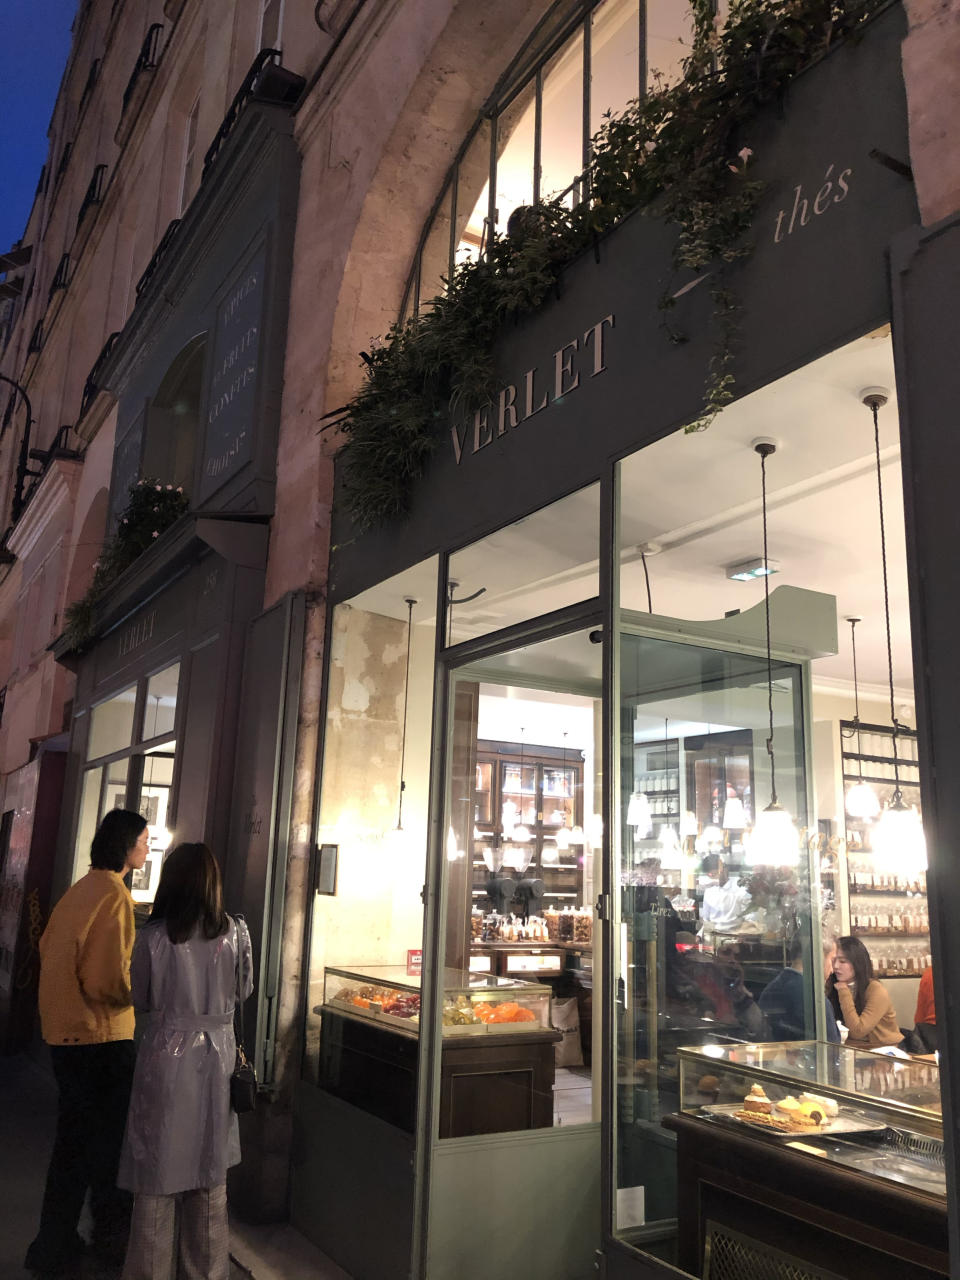 Diptyque聯乘巴黎著名老字號咖啡店Café Verlet！四款精緻甜點限定版經典香氛蠟燭